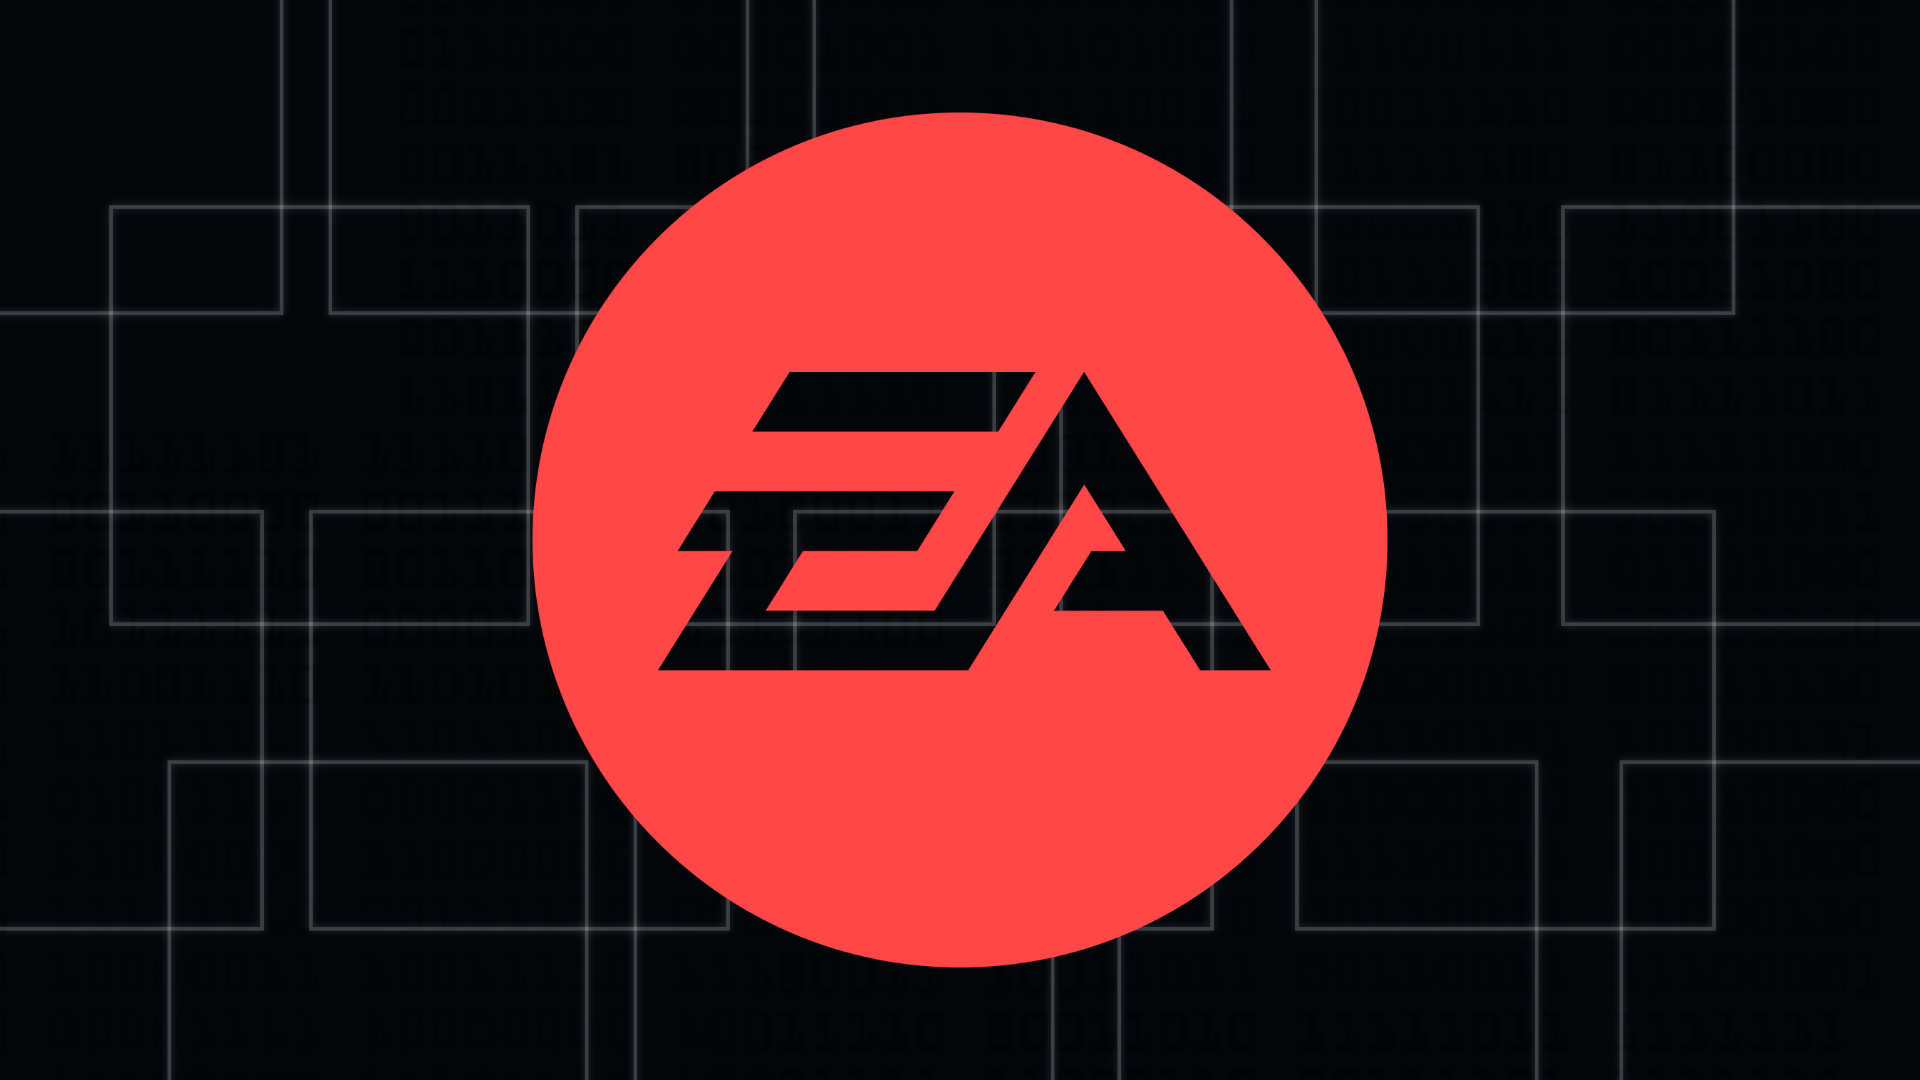 《戰地風雲2042》新賽季獲得成功 EA將加倍投入支持